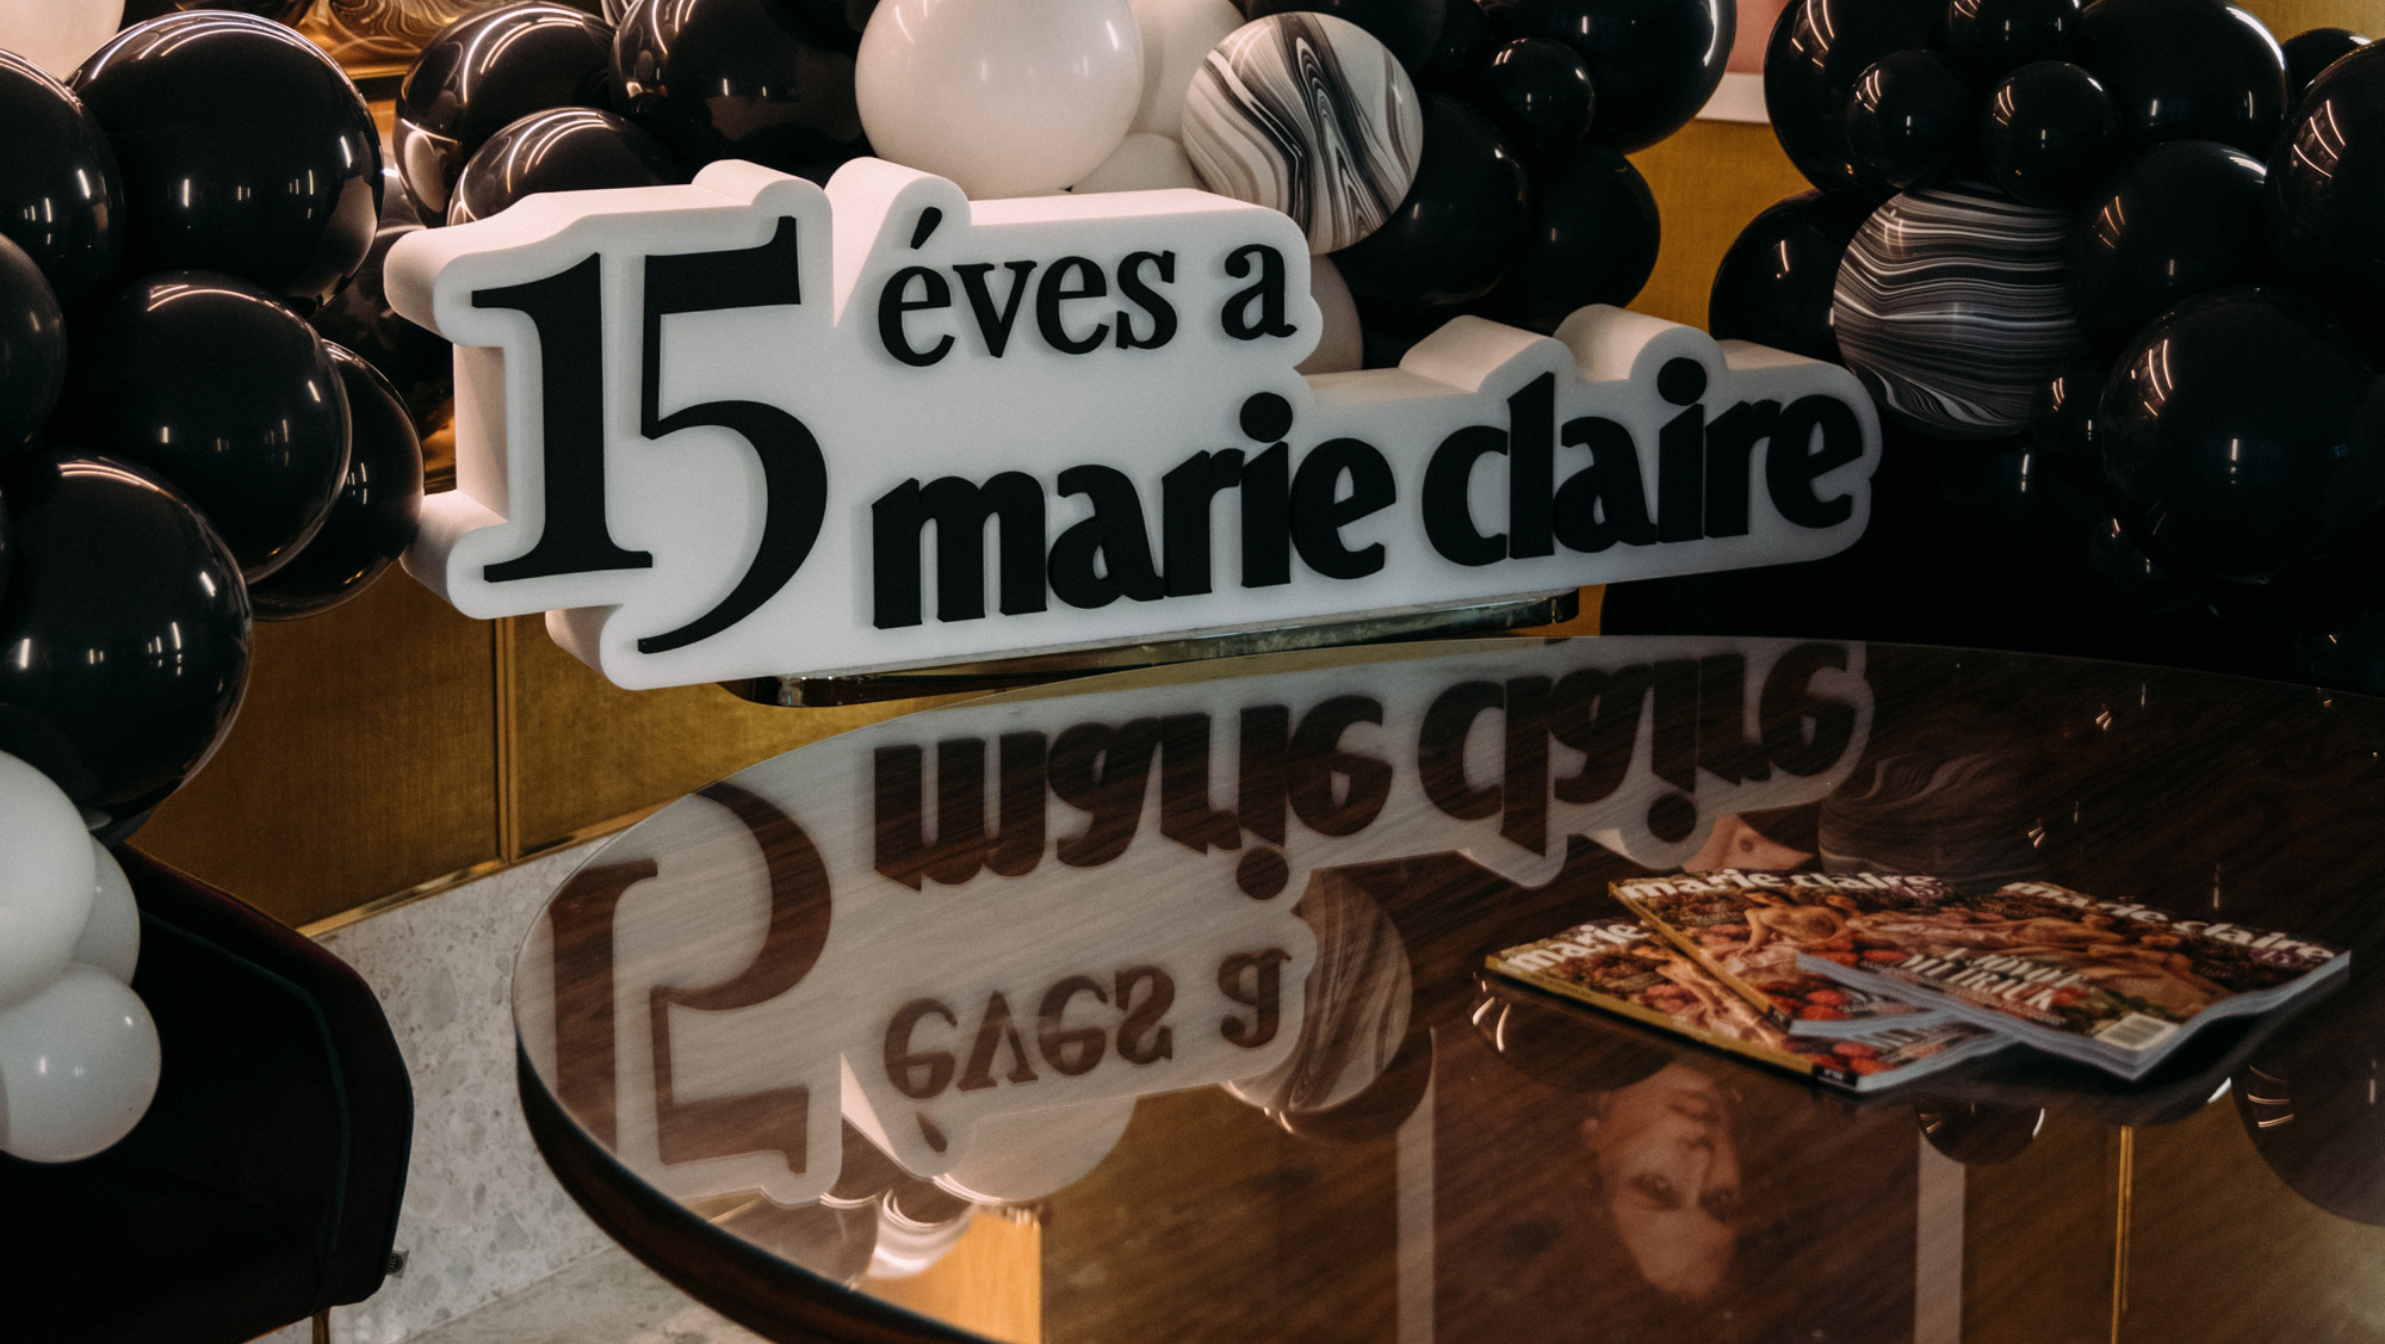 Születésnapját ünnepelte nagysikerű női magazinunk, a Marie Claire!